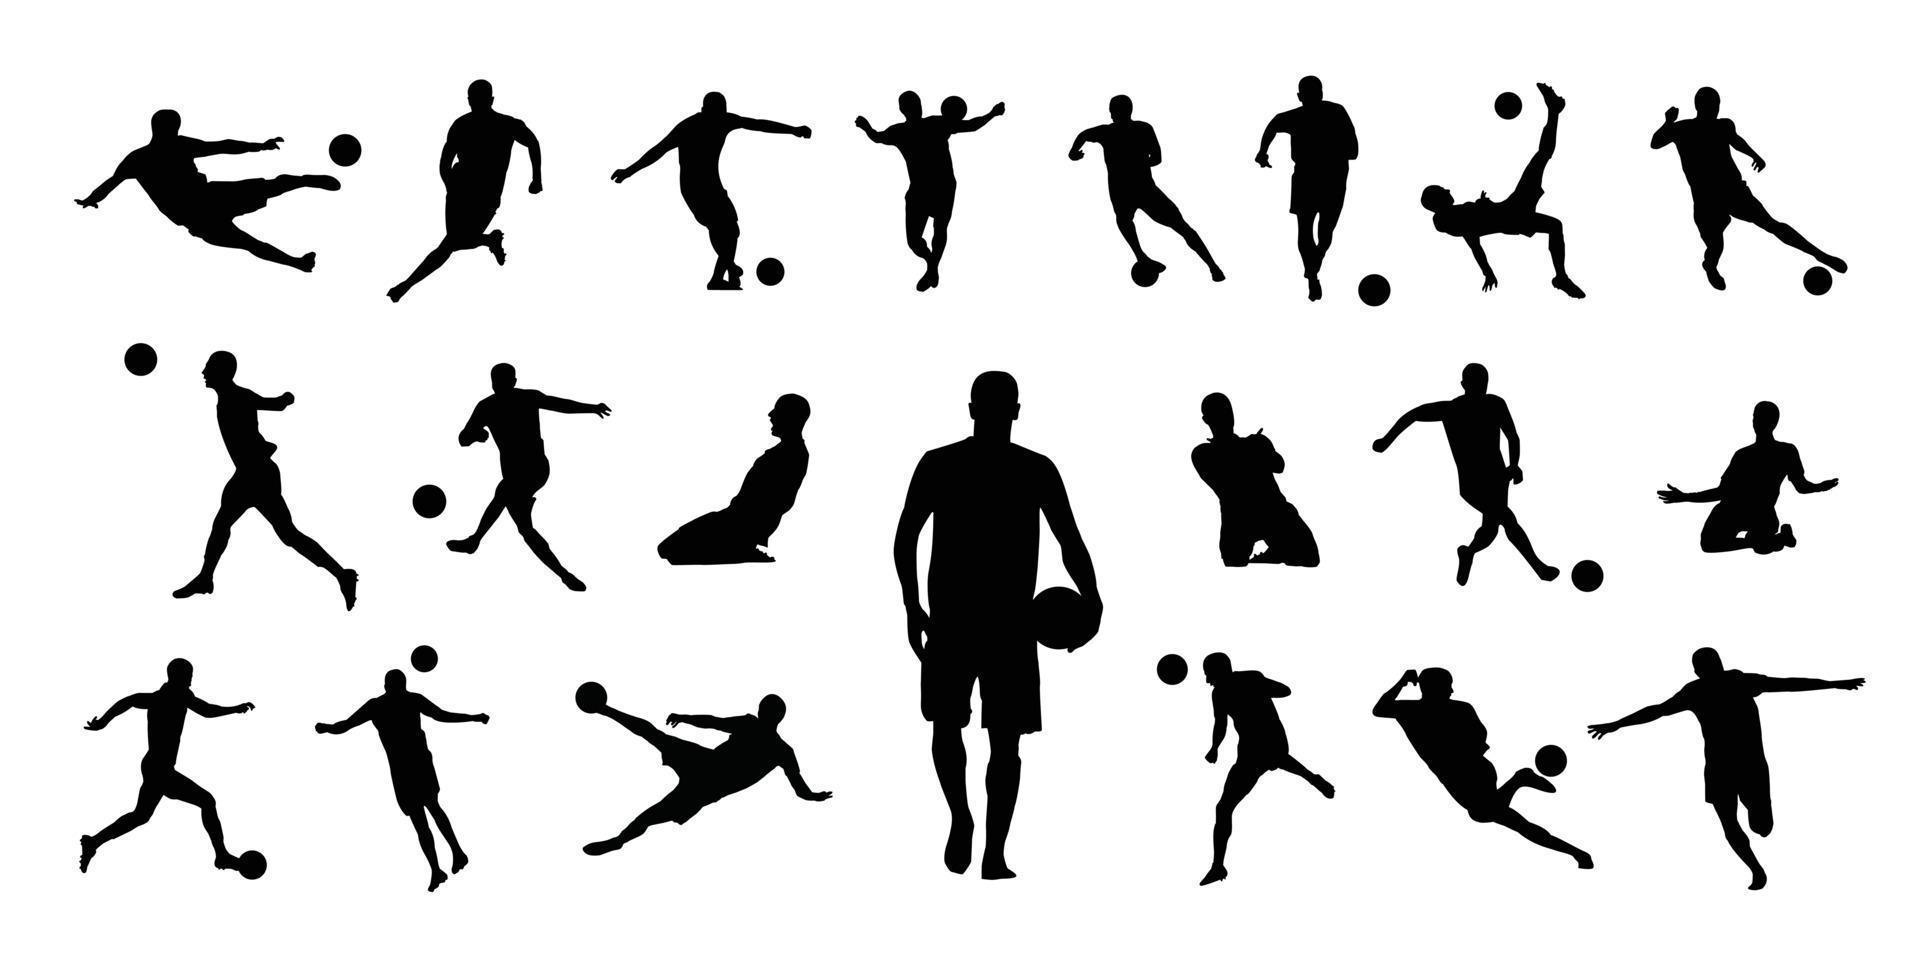 samling av 21 fotboll spelare ikon vektor illustrationer. består av olika typer av insatser sådan som sparkar, dribblingar, och så på. mycket Bra till använda sig av till fylla i design relaterad till fotboll.